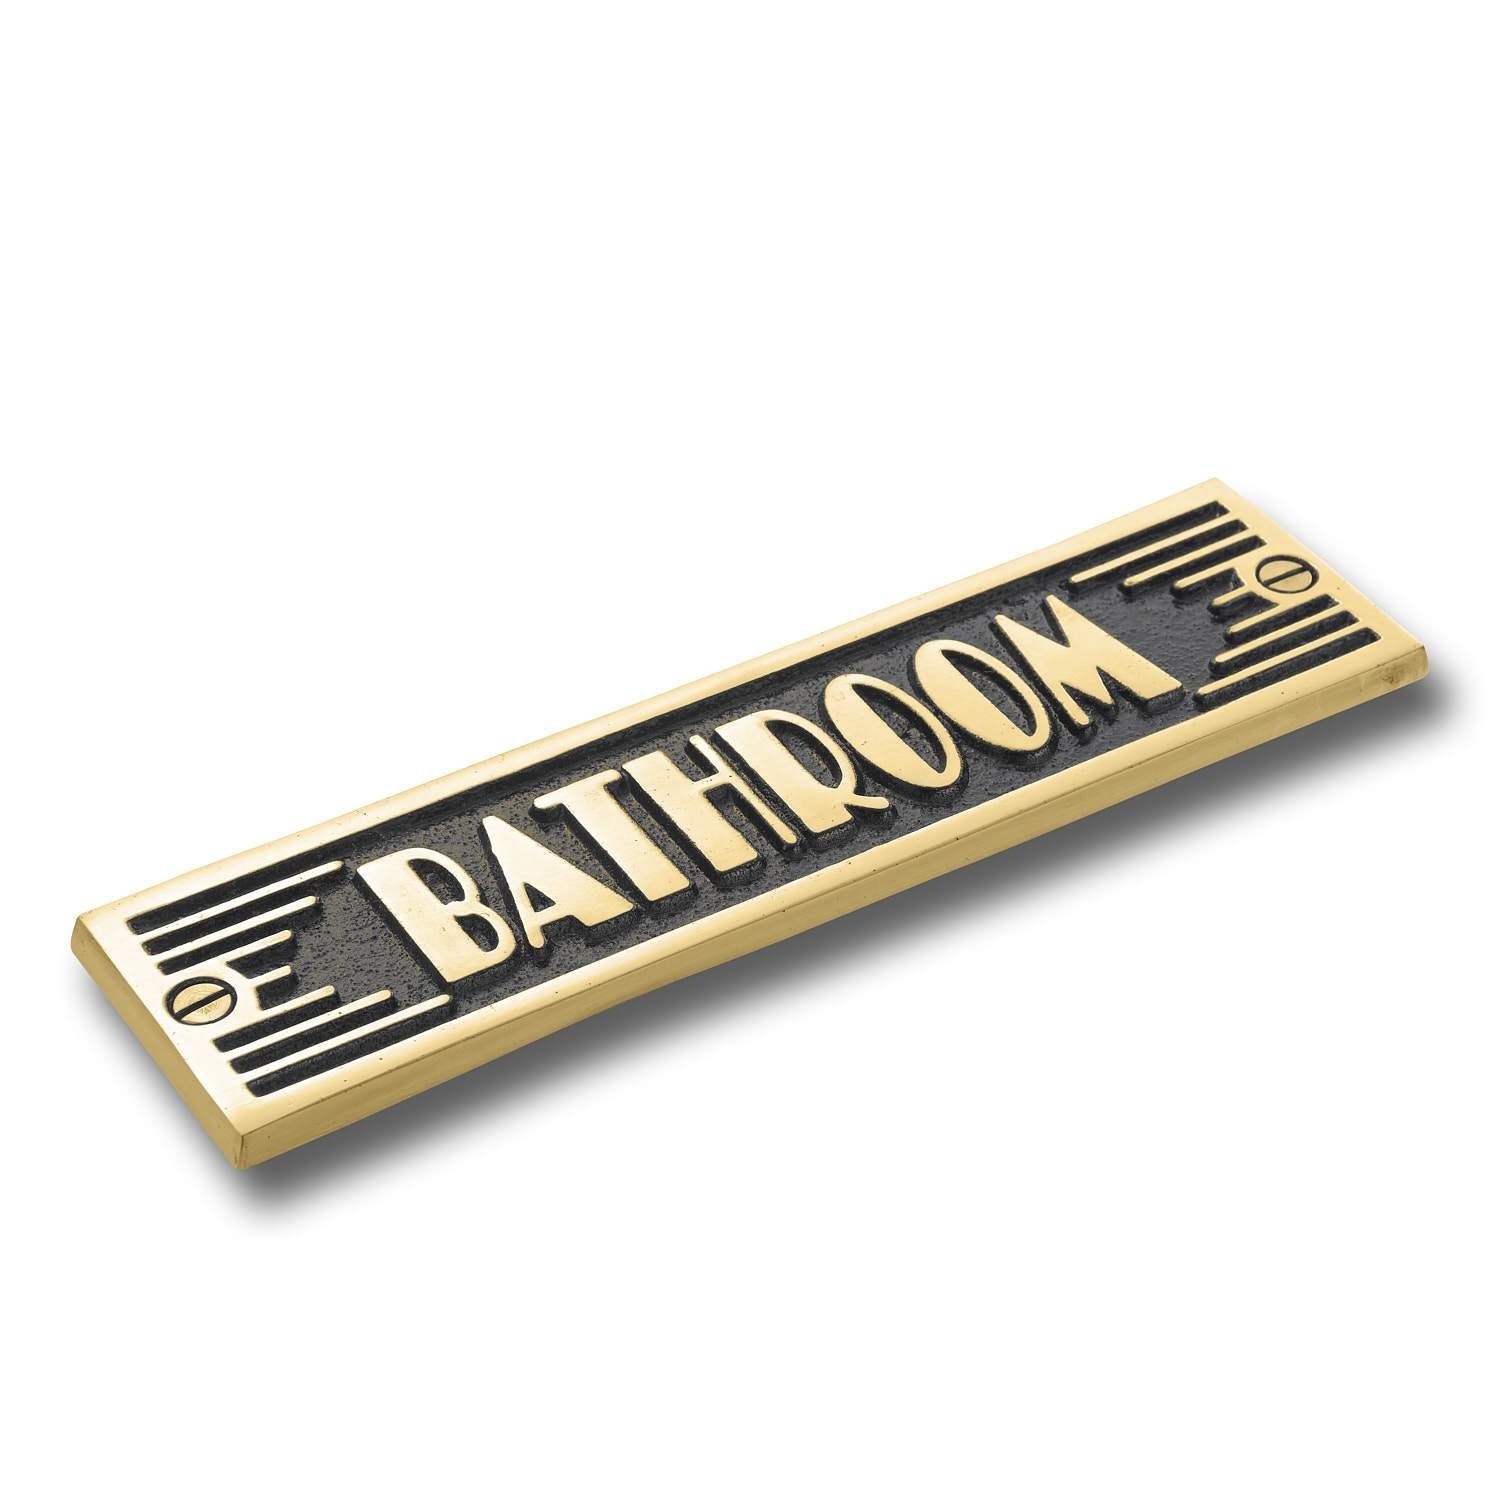 Art Deco Bathroom Door Sign. Heavy Duty Cast Metal Plaque Handmade In England. – Bathroom + Arrow Brass